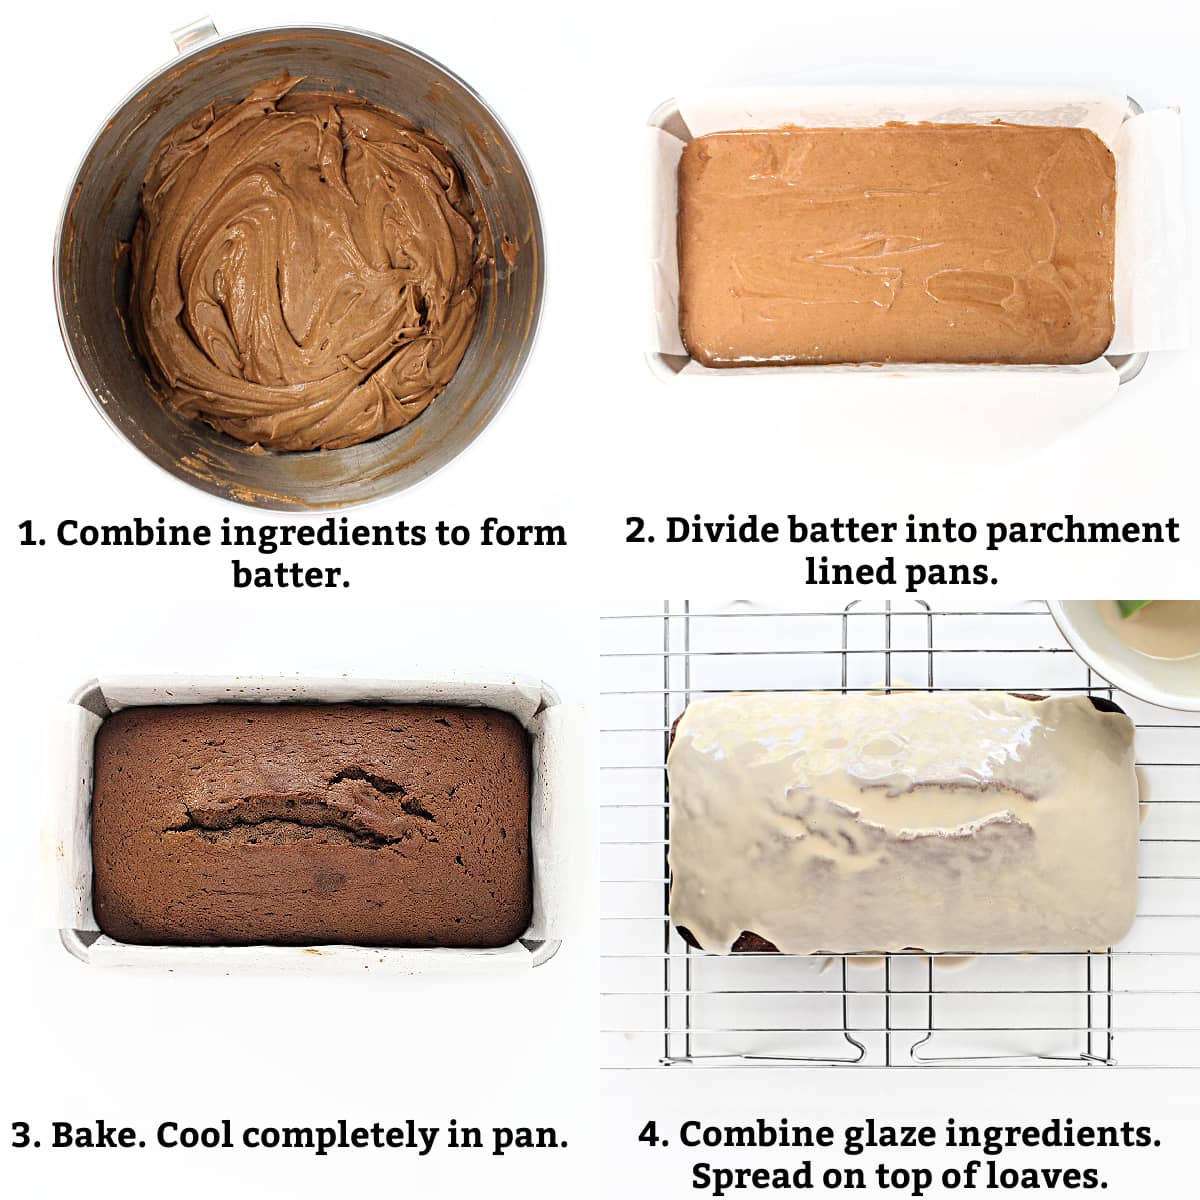 Instructions: combine ingredients for batter, divide batter into pans, bake, glaze.